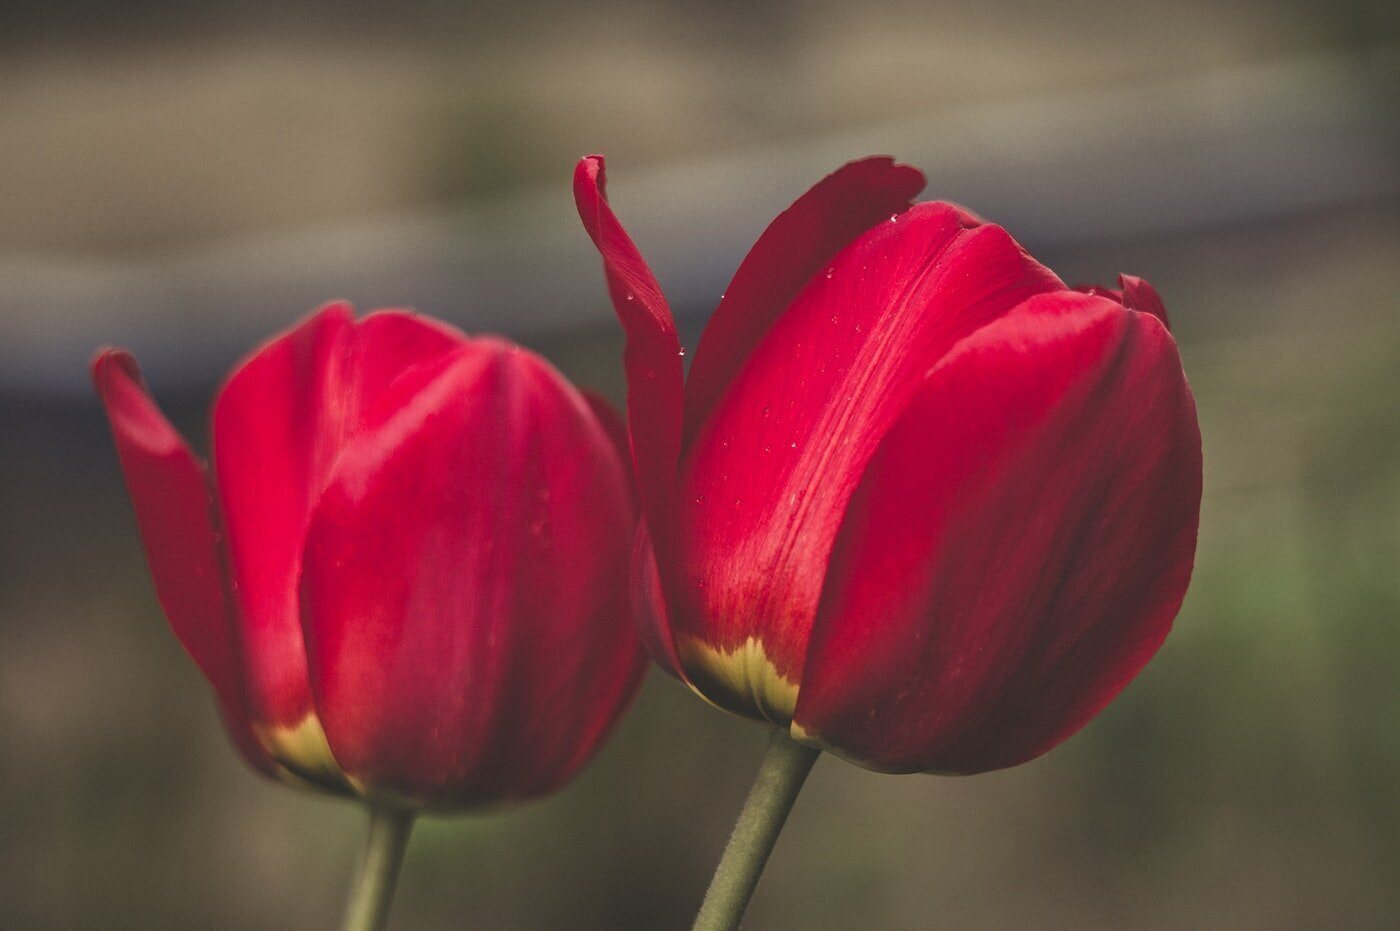 primer plano de dos tulipanes rojos - significado y simbolismo de los tulipanes